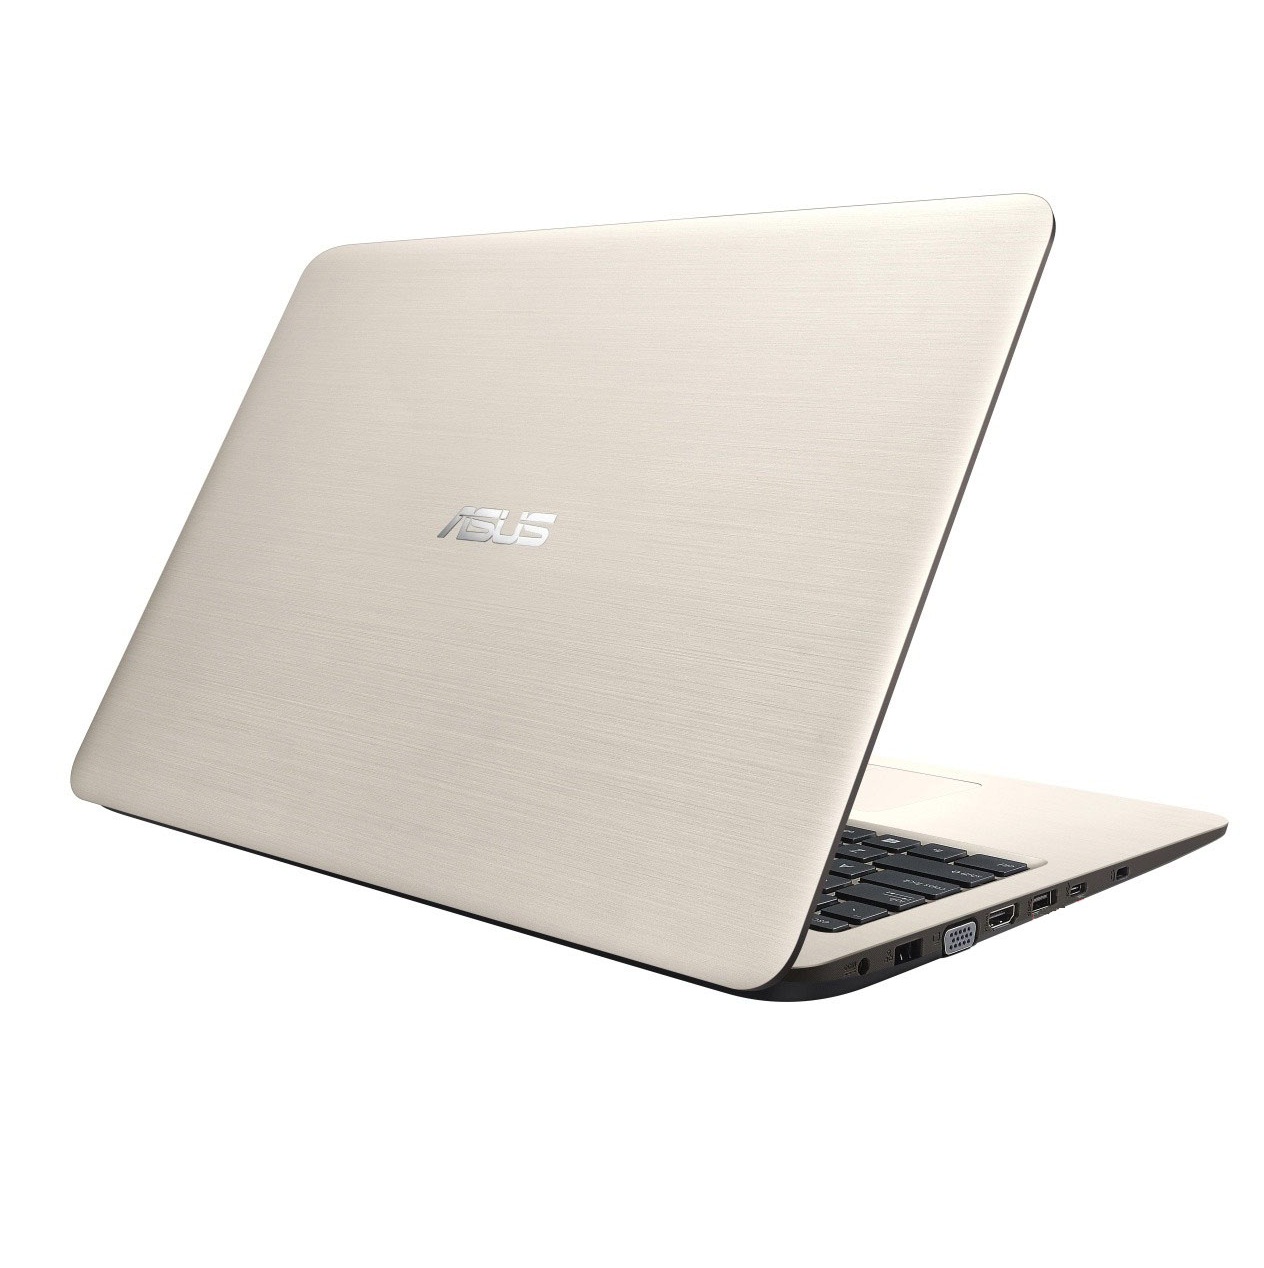 Laptop ASUS A556UR-DM090T Core i7-6500U Ram 4GB HDD 1000GB GT930 2G Windown 10